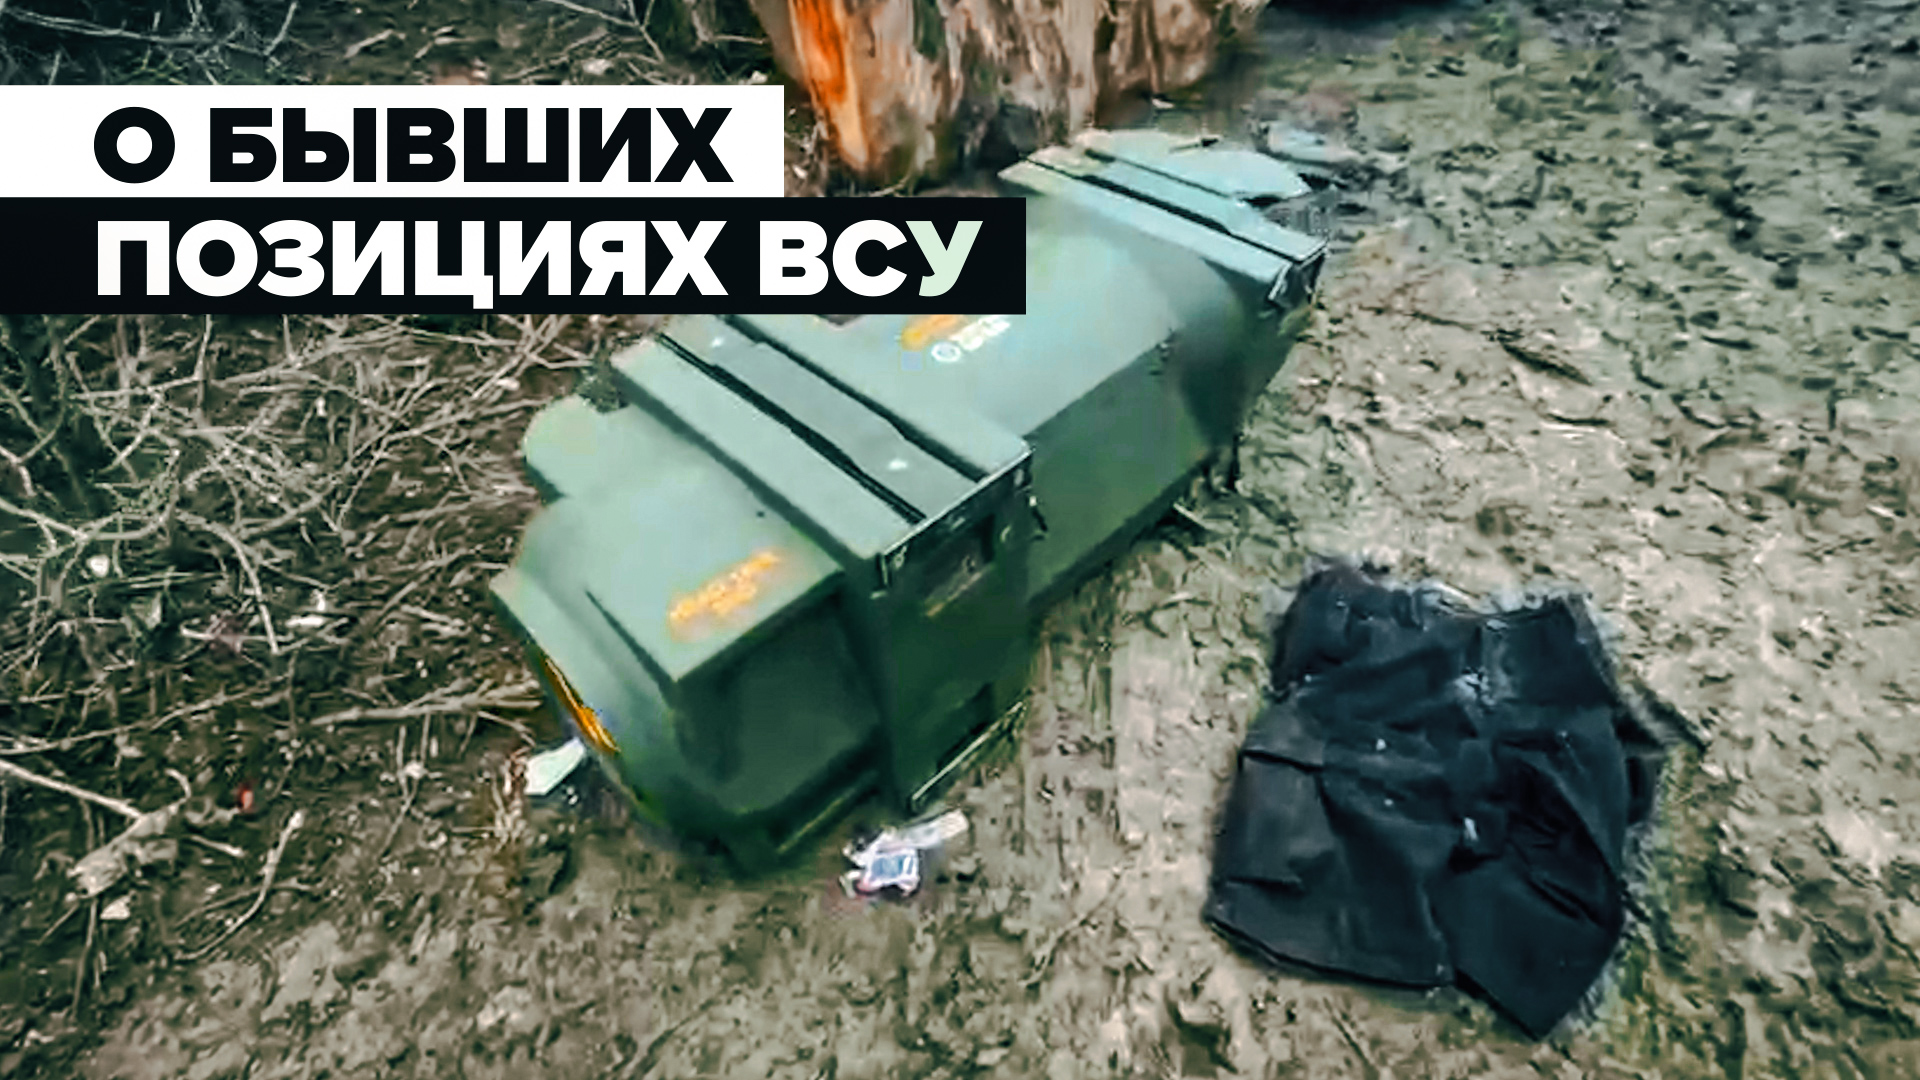 Британская противотанковая ракета и украинский флаг: о бывших позициях ВСУ